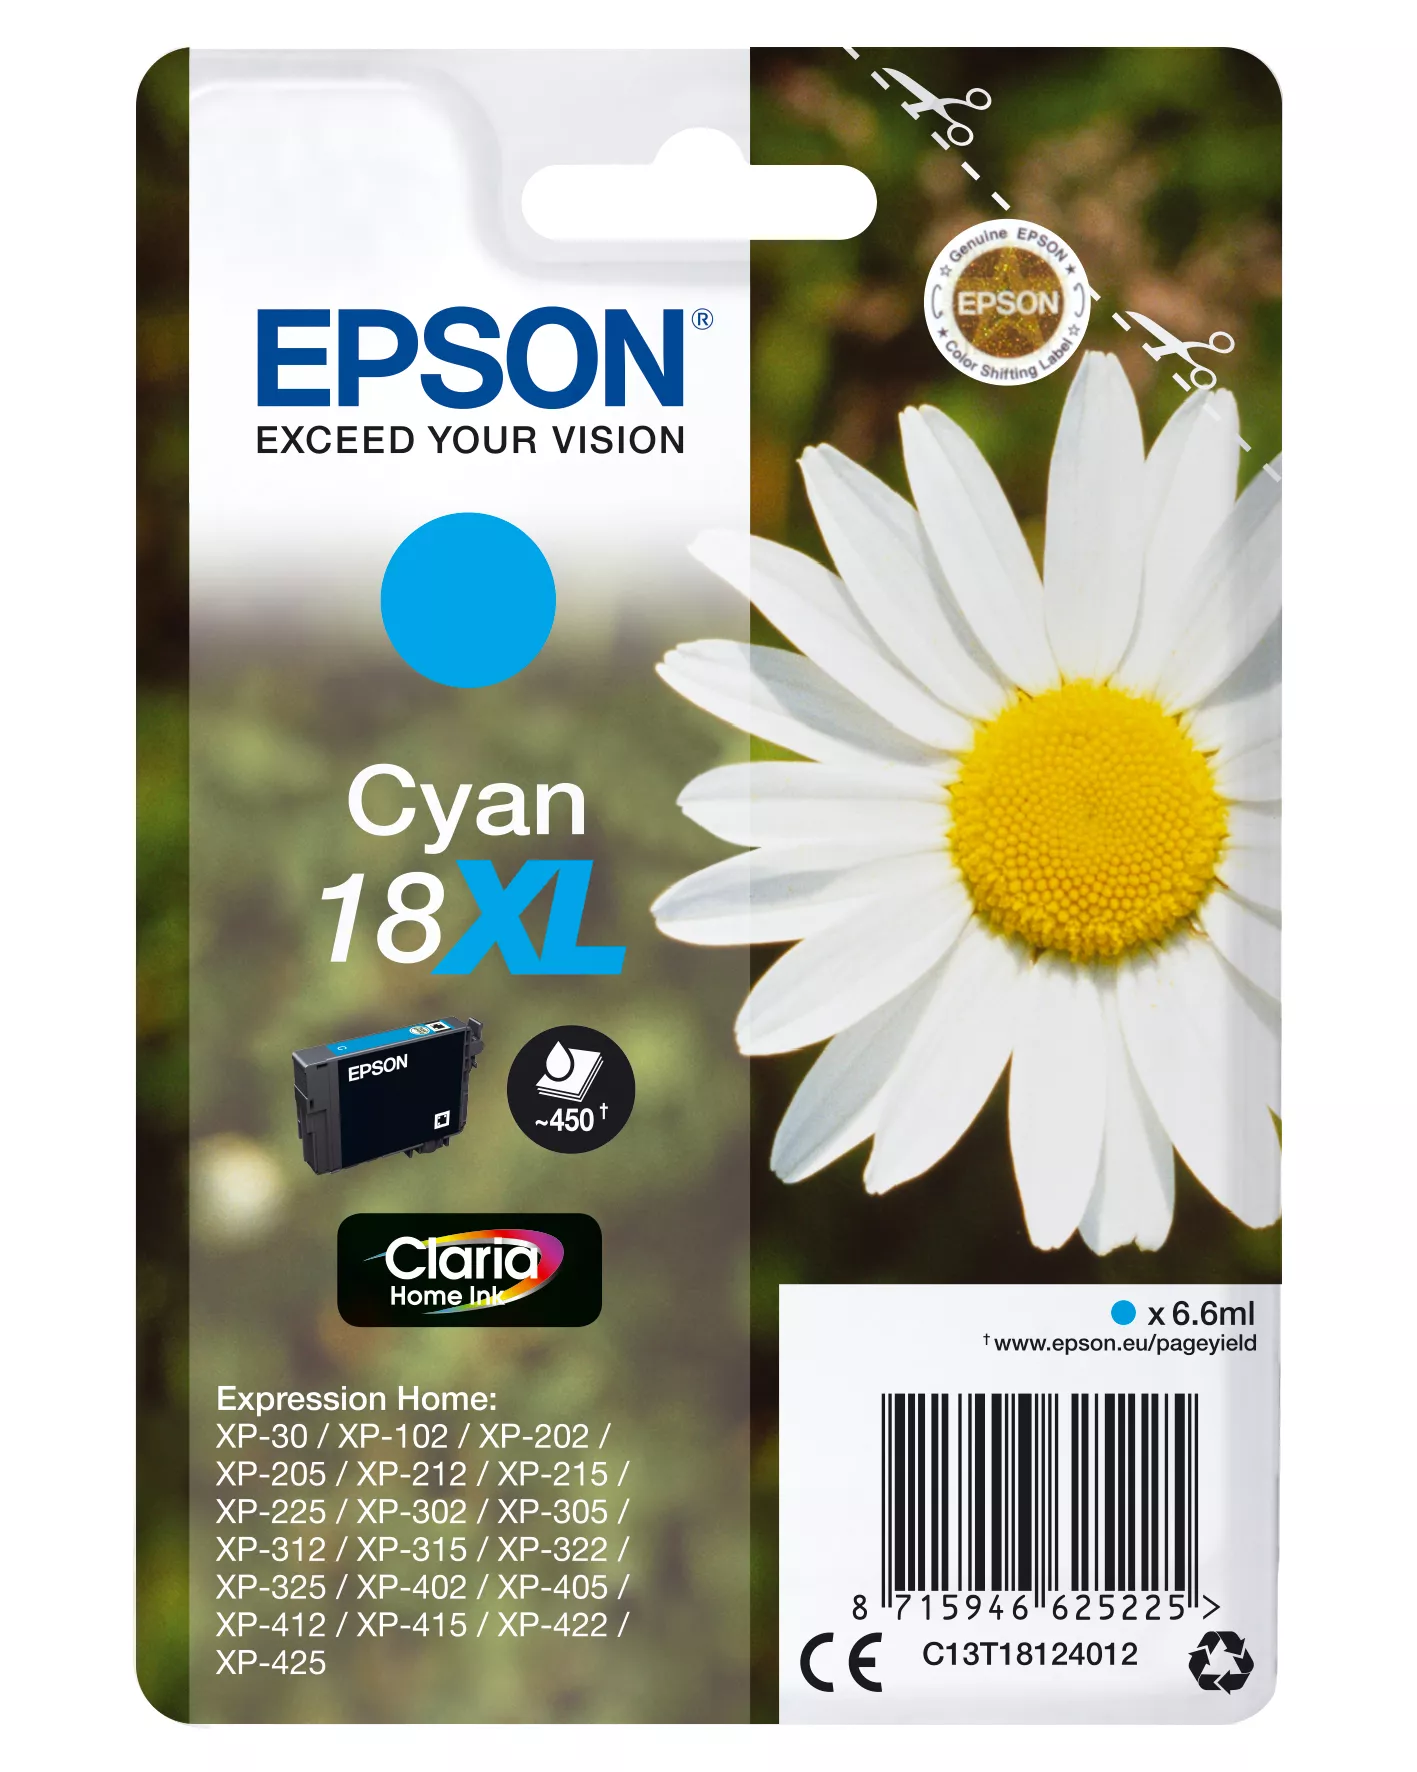 Achat EPSON 18XL cartouche dencre cyan haute capacité 6.6ml 450 au meilleur prix